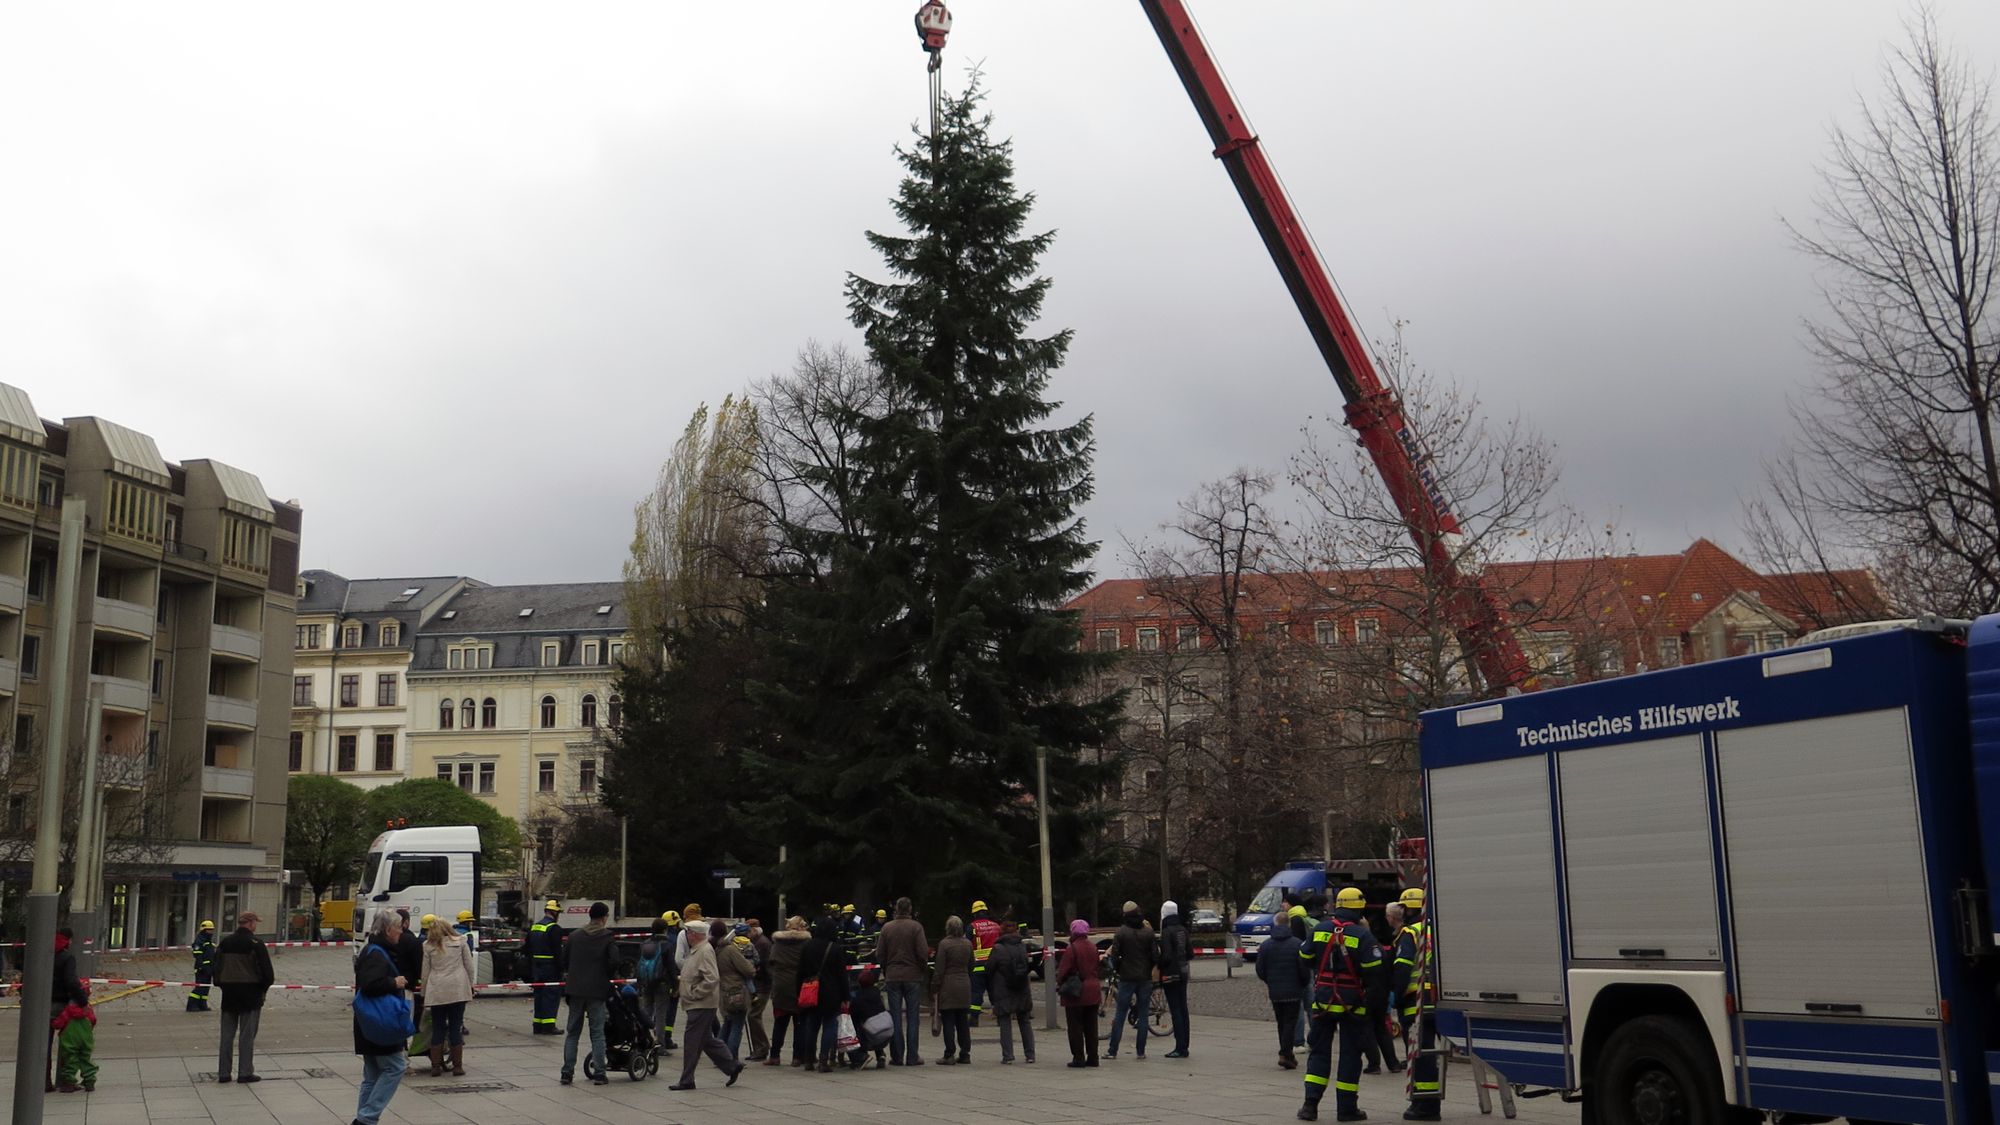 So hoch wie 2015 braucht der Weihnachtsbaum nicht zu sein, der war damals stattliche 15 Meter groß. Aktuell wird eine Tanne oder Fichte mit ca. zehn Metern Höhe gesucht.